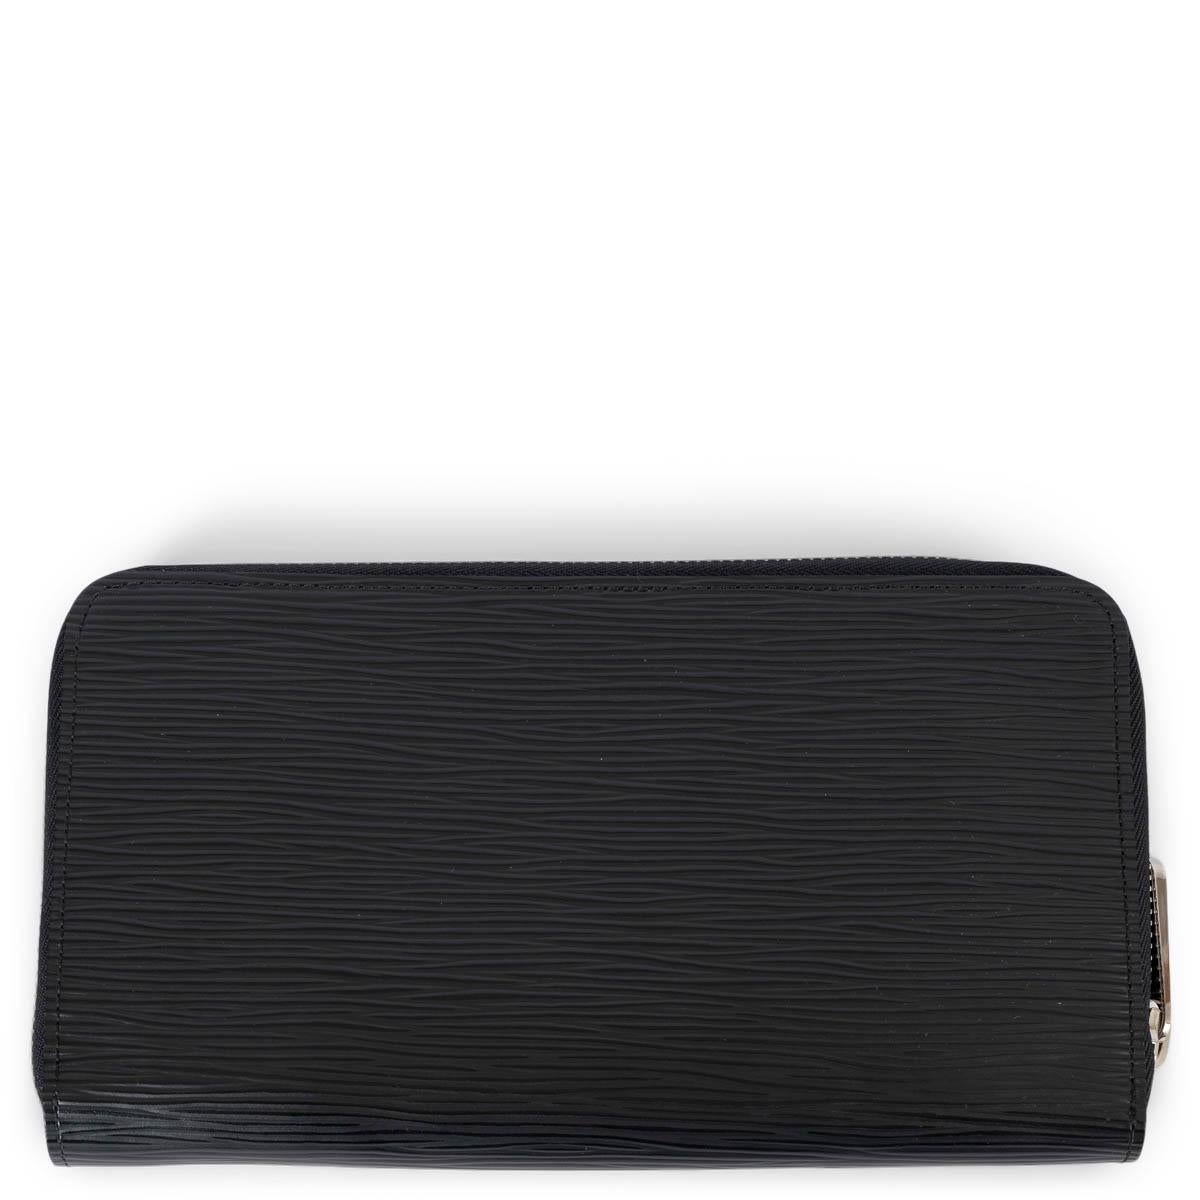 100% authentisches Louis Vuitton Zippy Portemonnaie aus schwarzem Epi-Leder mit umlaufendem Reißverschluss, der sich öffnen lässt, um mehrere Kartenfächer, Taschen und Fächer zu enthüllen. Das Design bietet silberfarbene Beschläge, 2 große Fächer